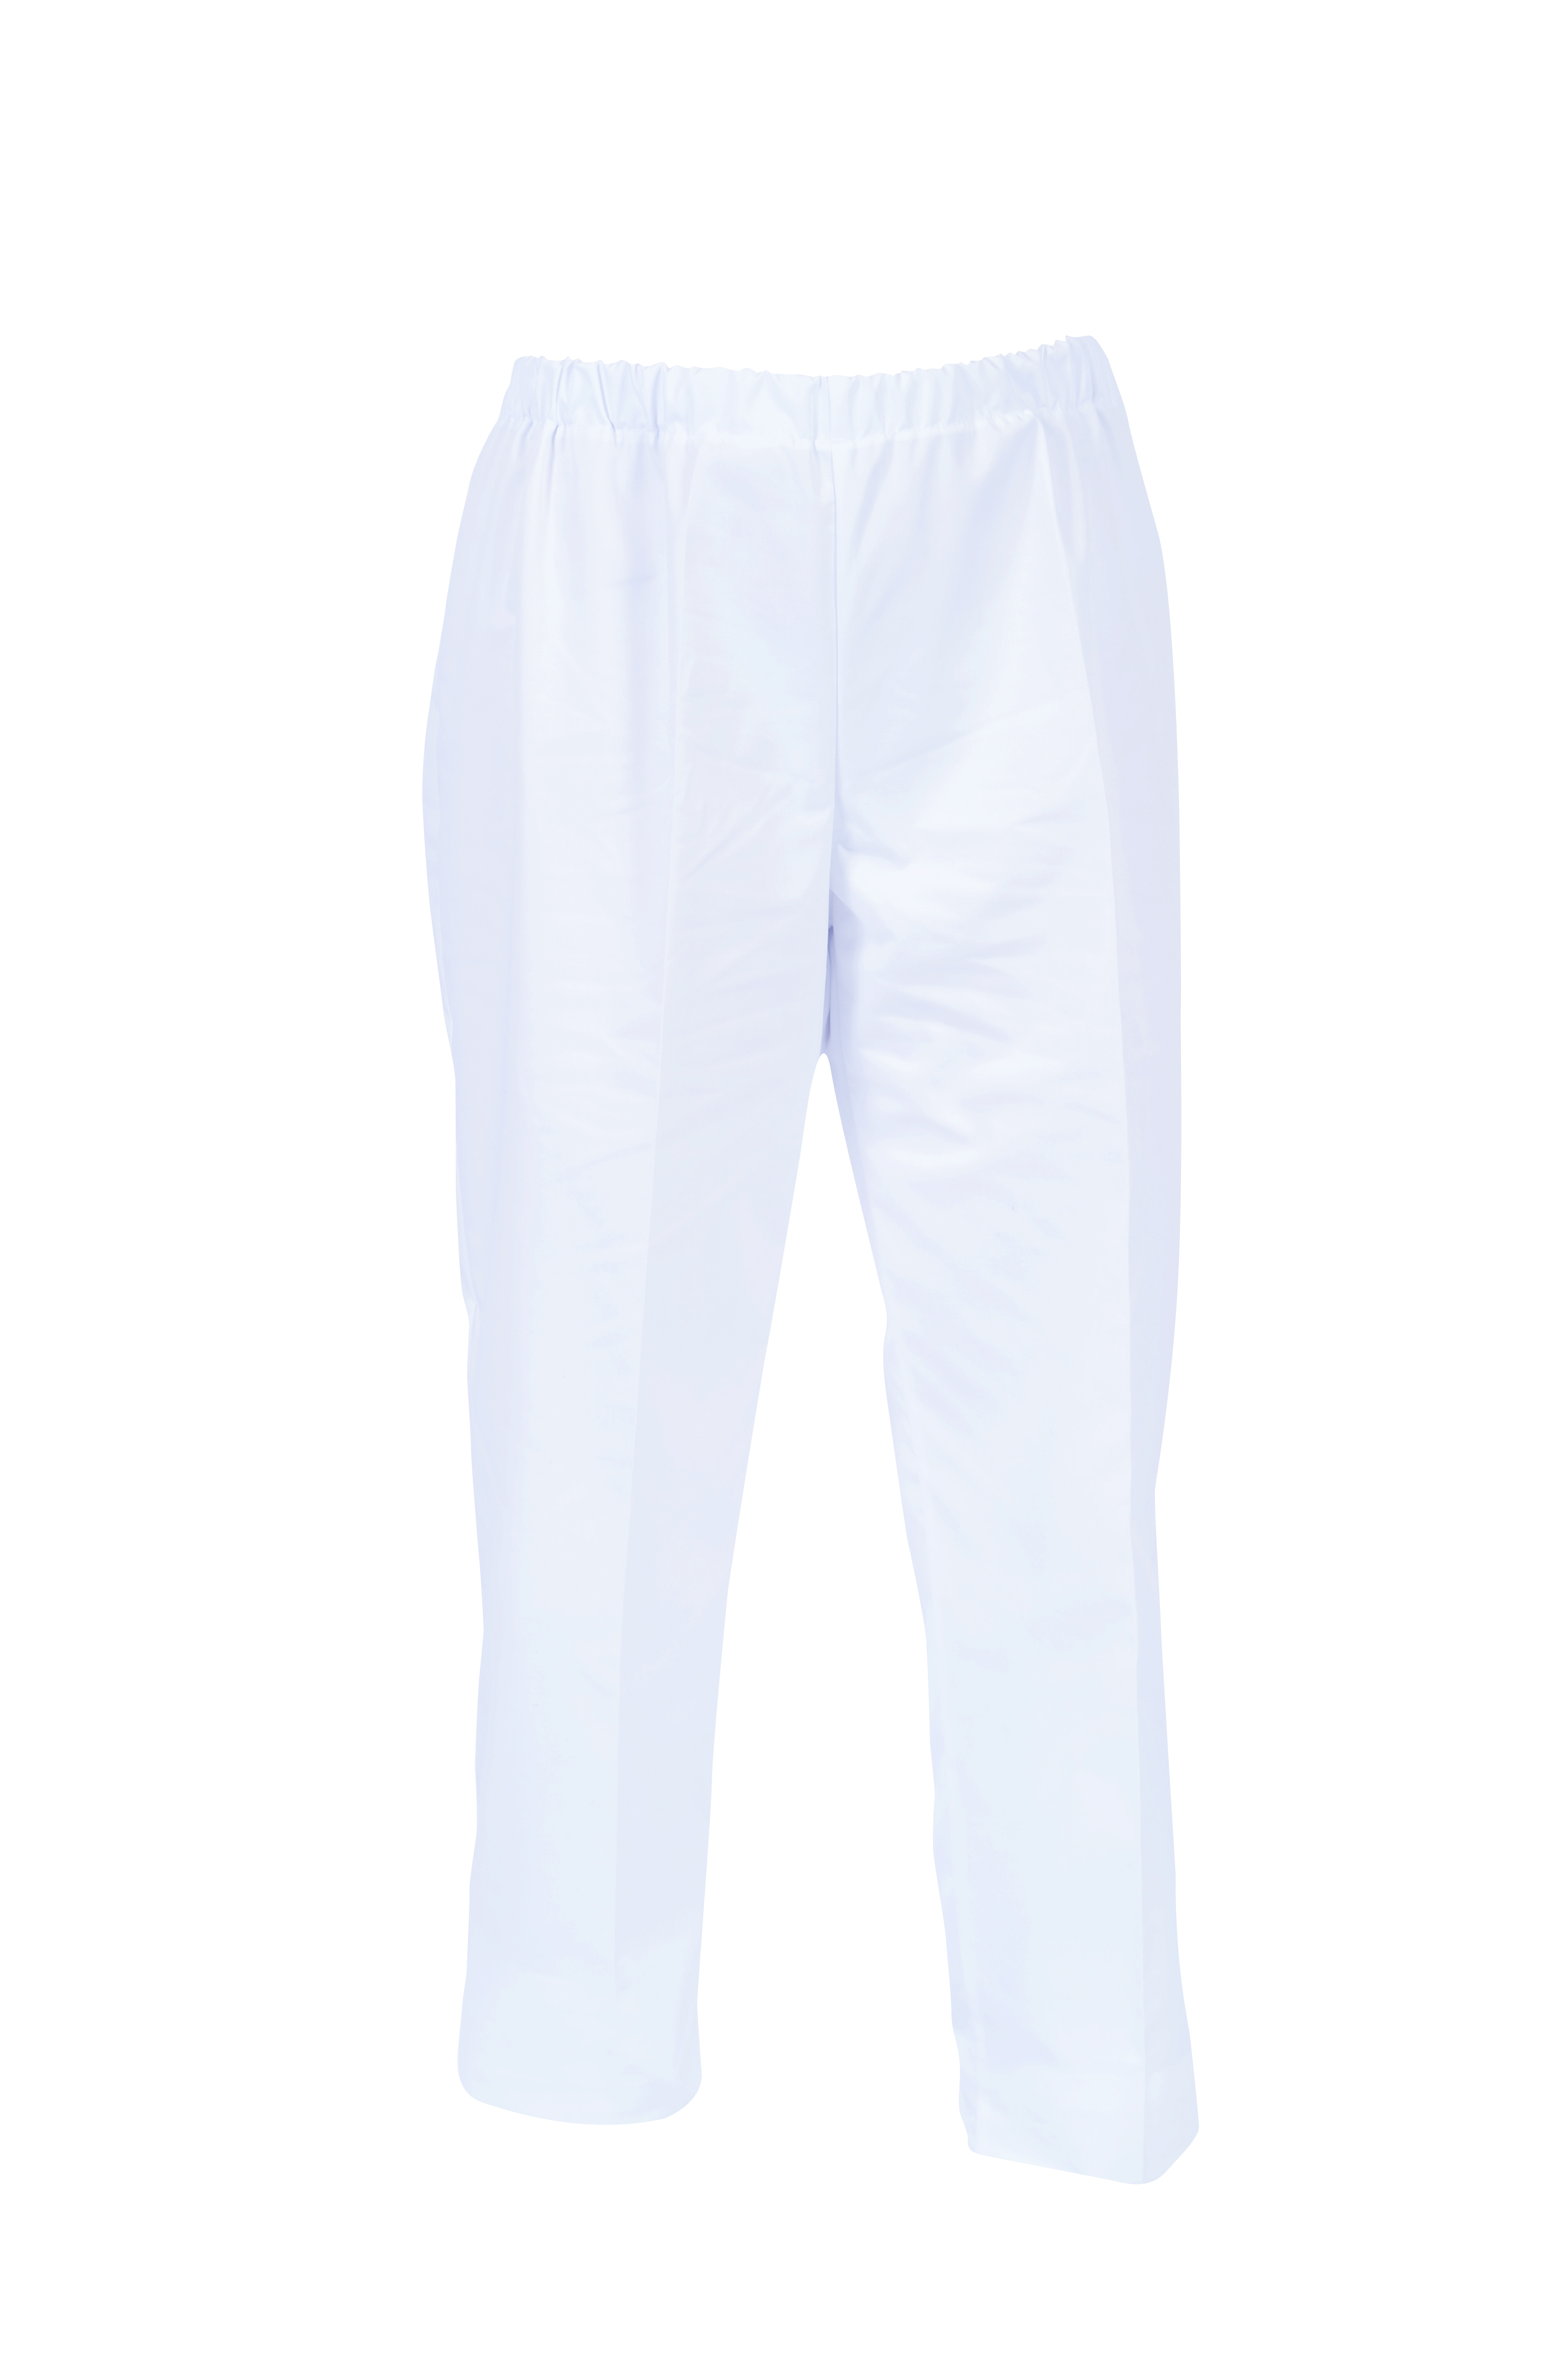 Pantalon mixte Umini blanc 